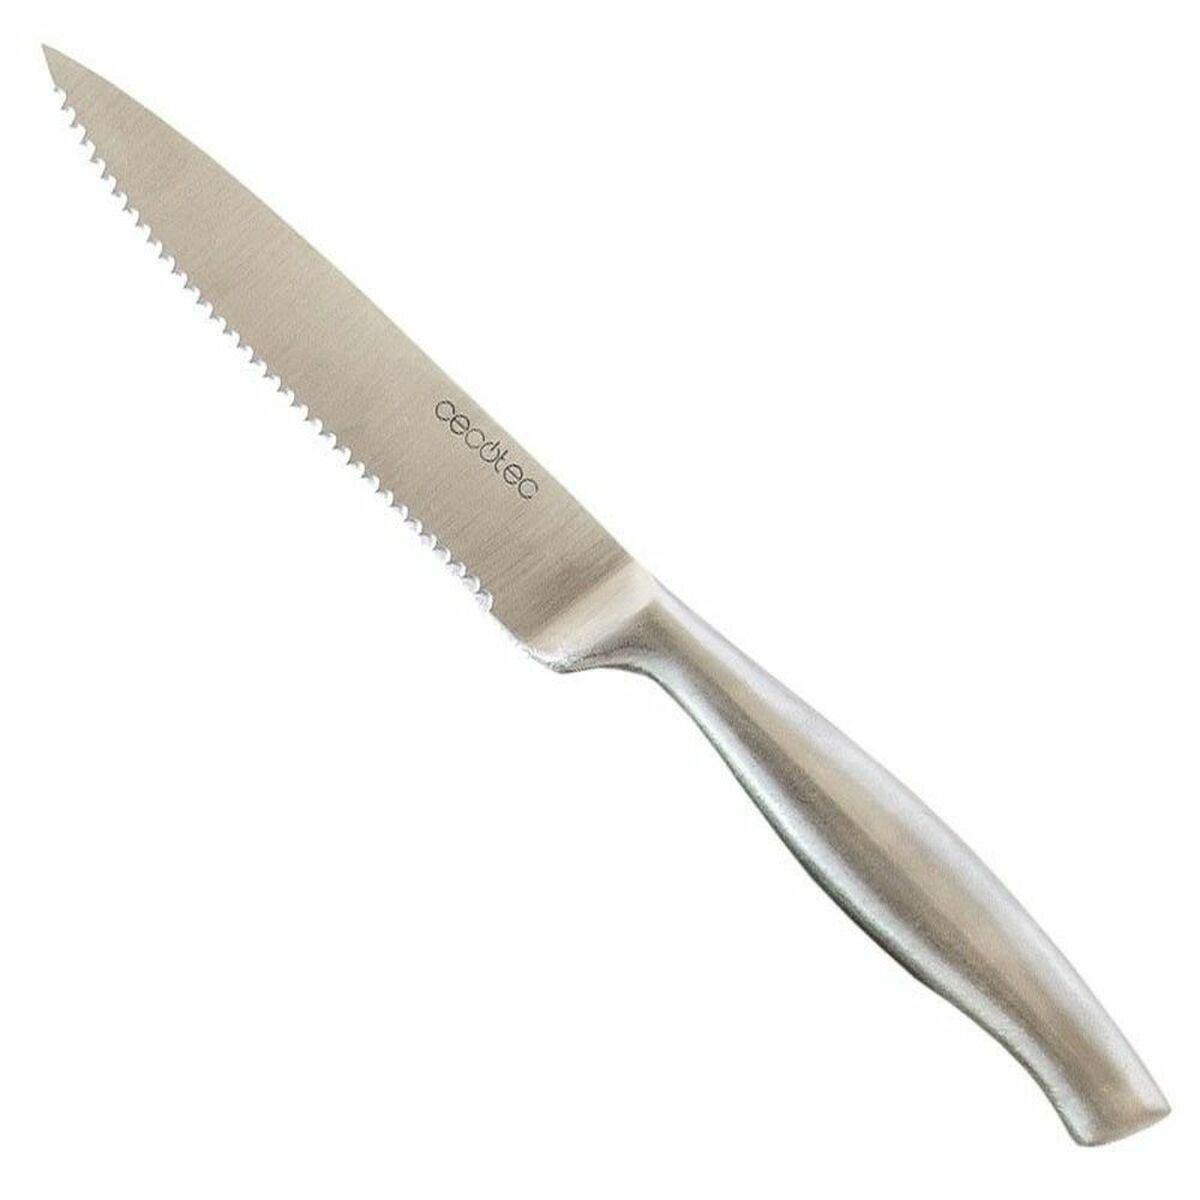 Knife Set Cecotec Set de cuchillos carne profesionales (6 pcs)